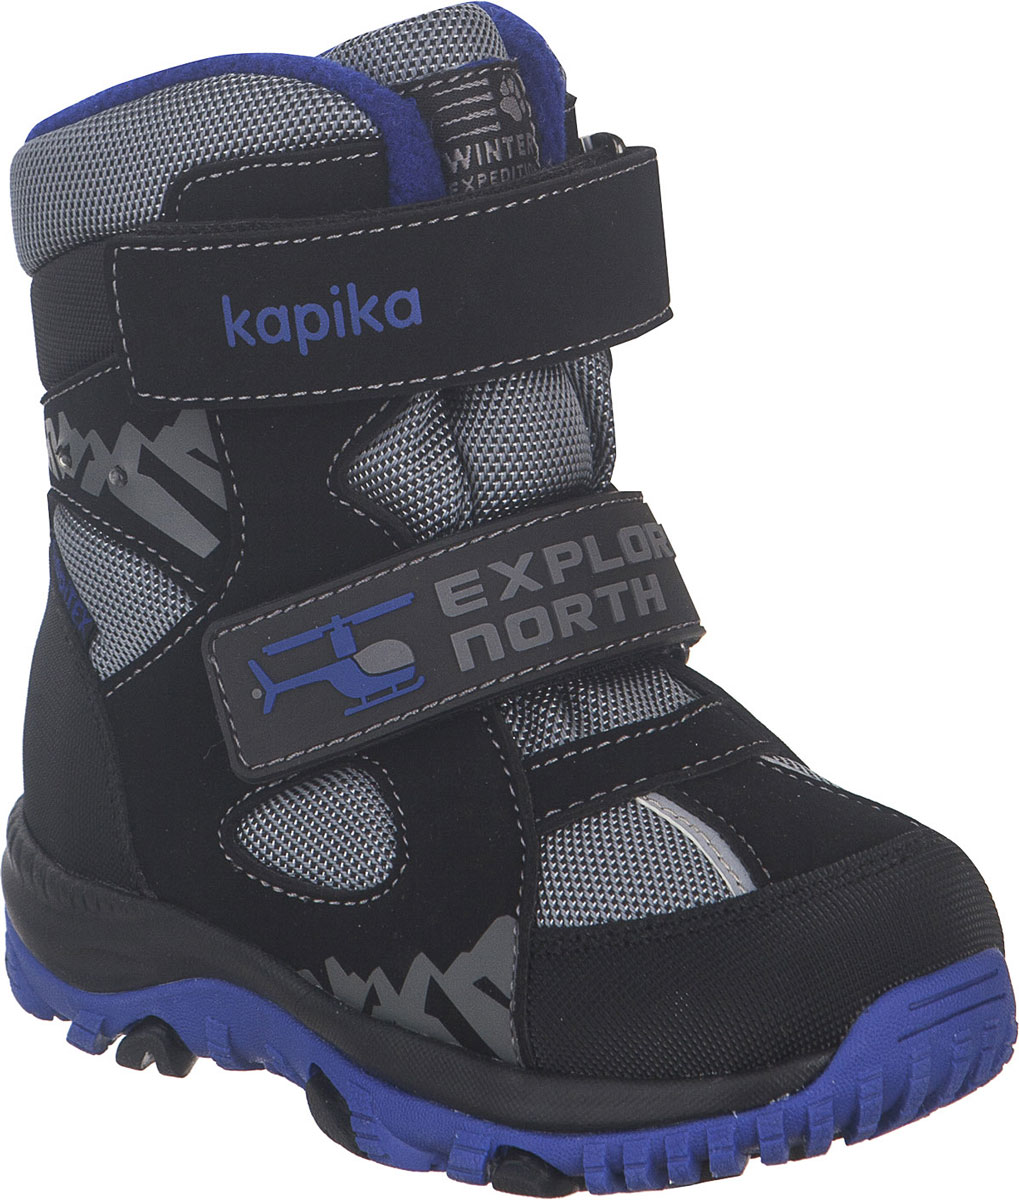 Ботинки для мальчика Kapika, цвет: черный, серый, синий. 41229-2. Размер 26